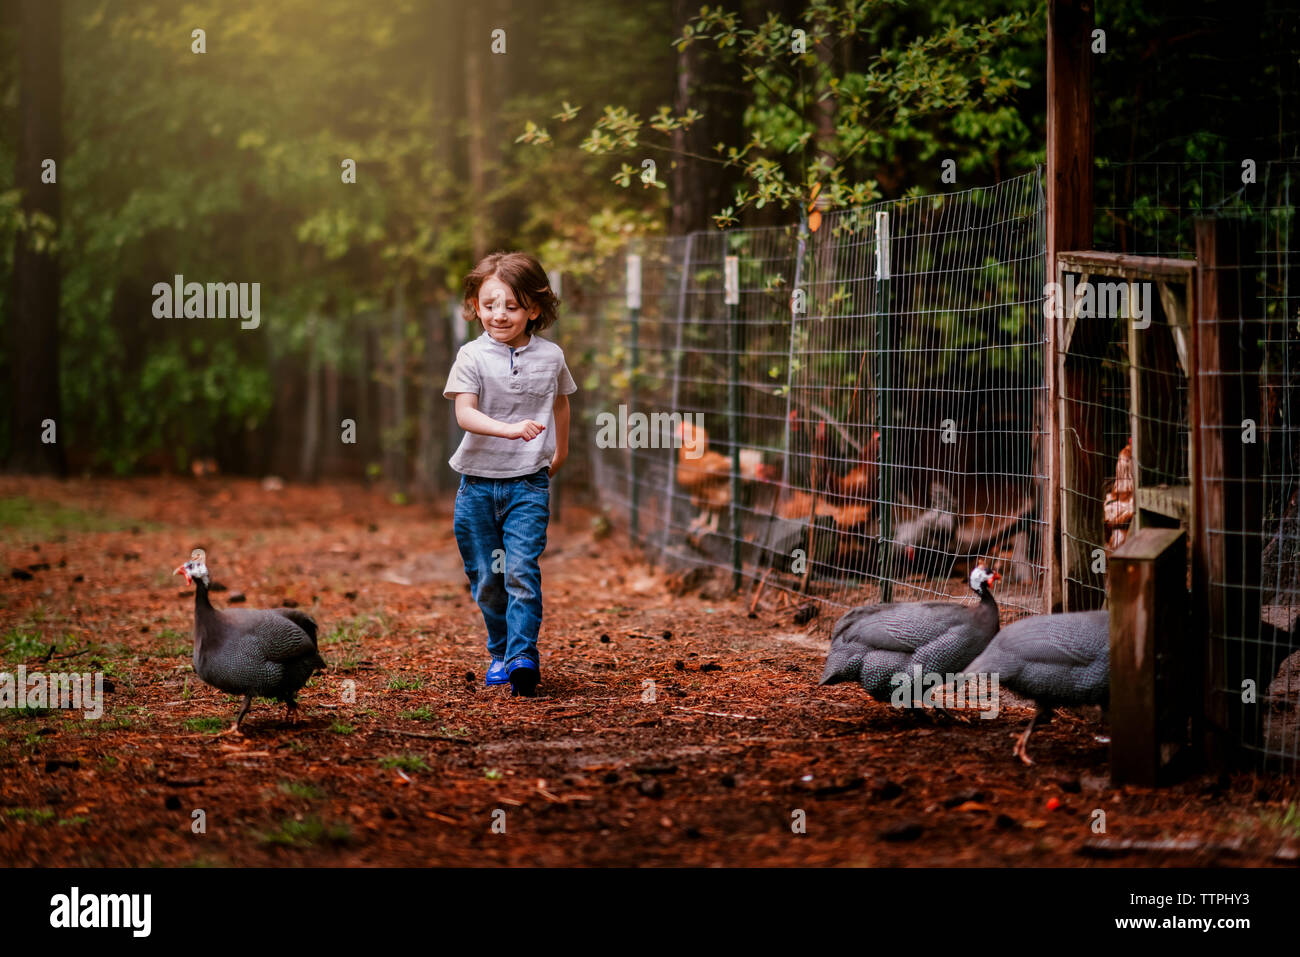 Un petit garçon courir après les poulets dans une ferme Banque D'Images